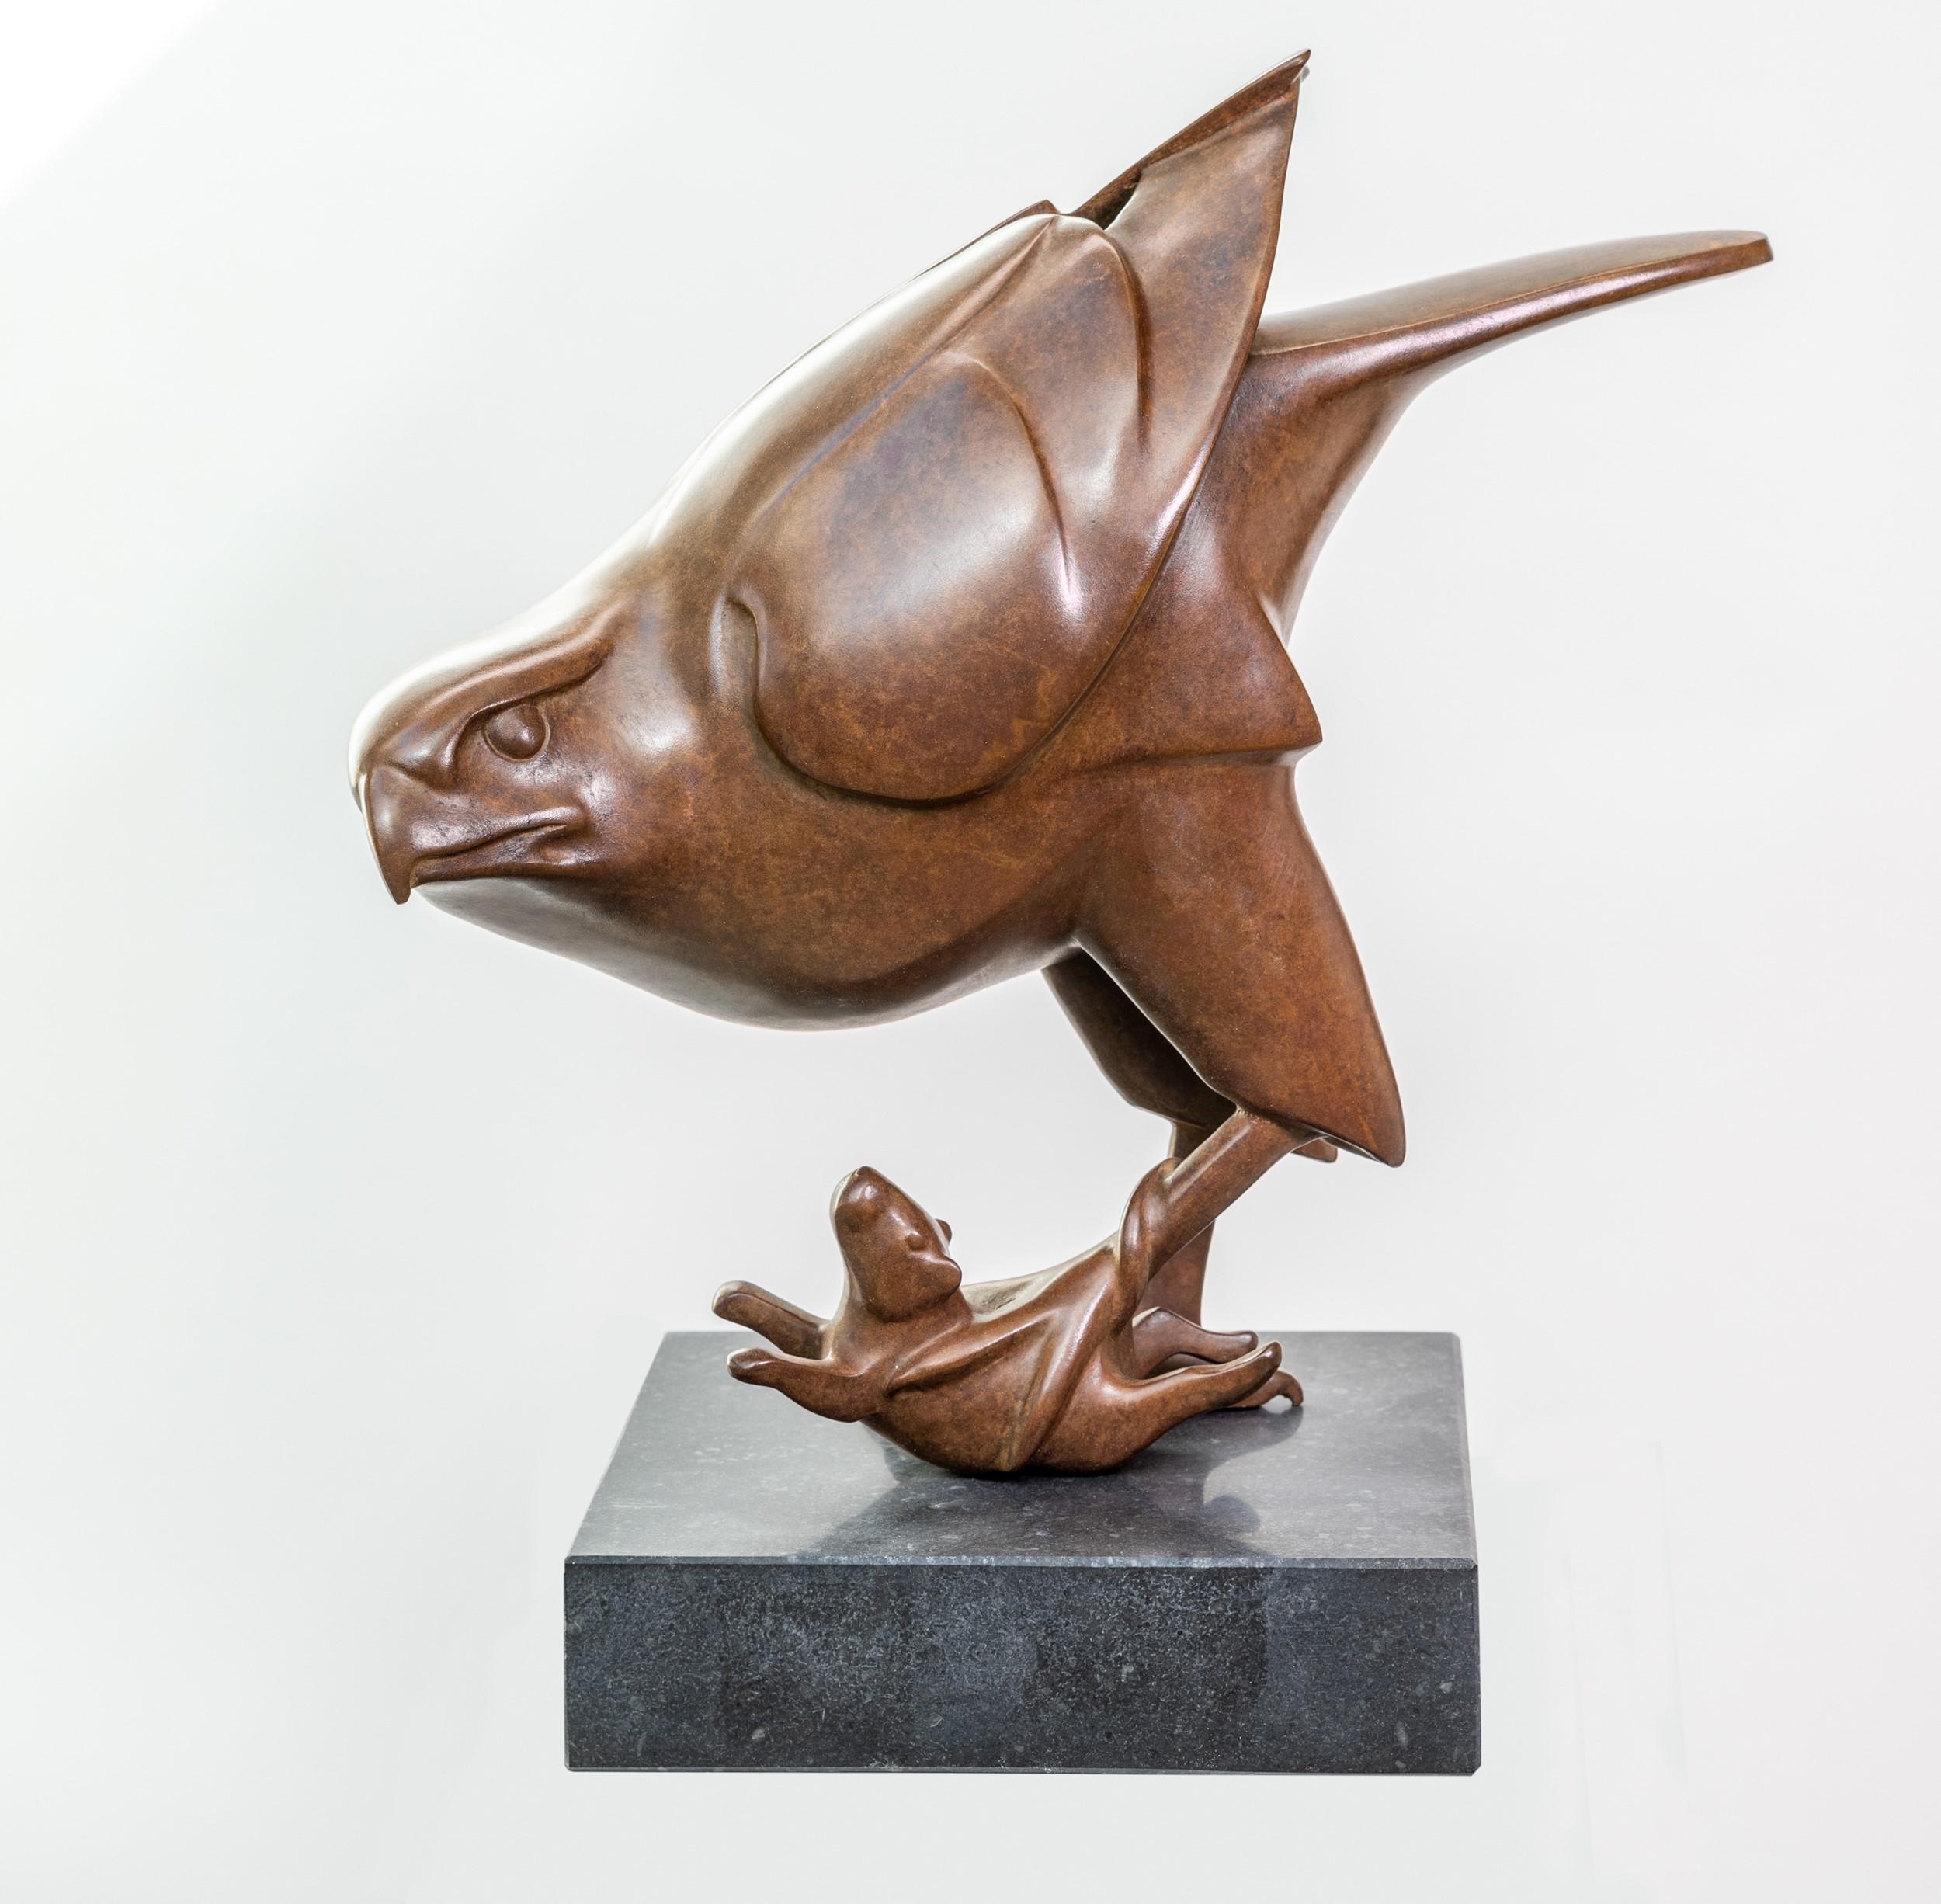 Evert den Hartog Figurative Sculpture – Roofvogel lernte Muis Prey Vogel mit Maus Bronzeskulptur kennen, Ltd Edition, auf Lager